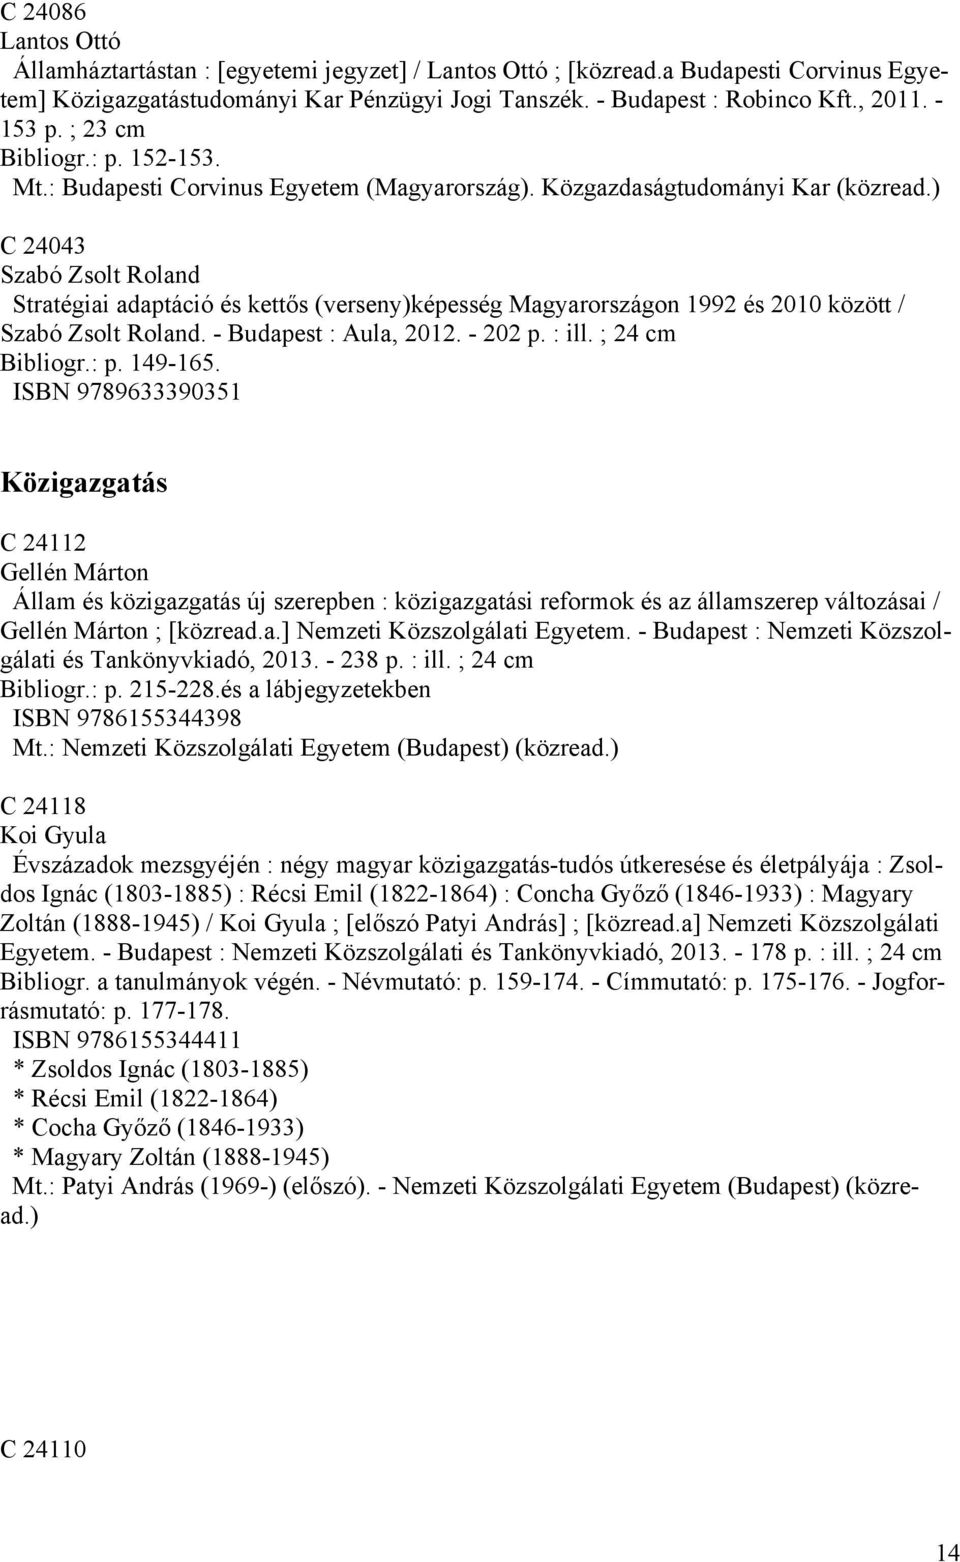 ) C 24043 Szabó Zsolt Roland Stratégiai adaptáció és kettős (verseny)képesség Magyarországon 1992 és 2010 között / Szabó Zsolt Roland. - Budapest : Aula, 2012. - 202 p. : ill. ; 24 cm Bibliogr.: p.